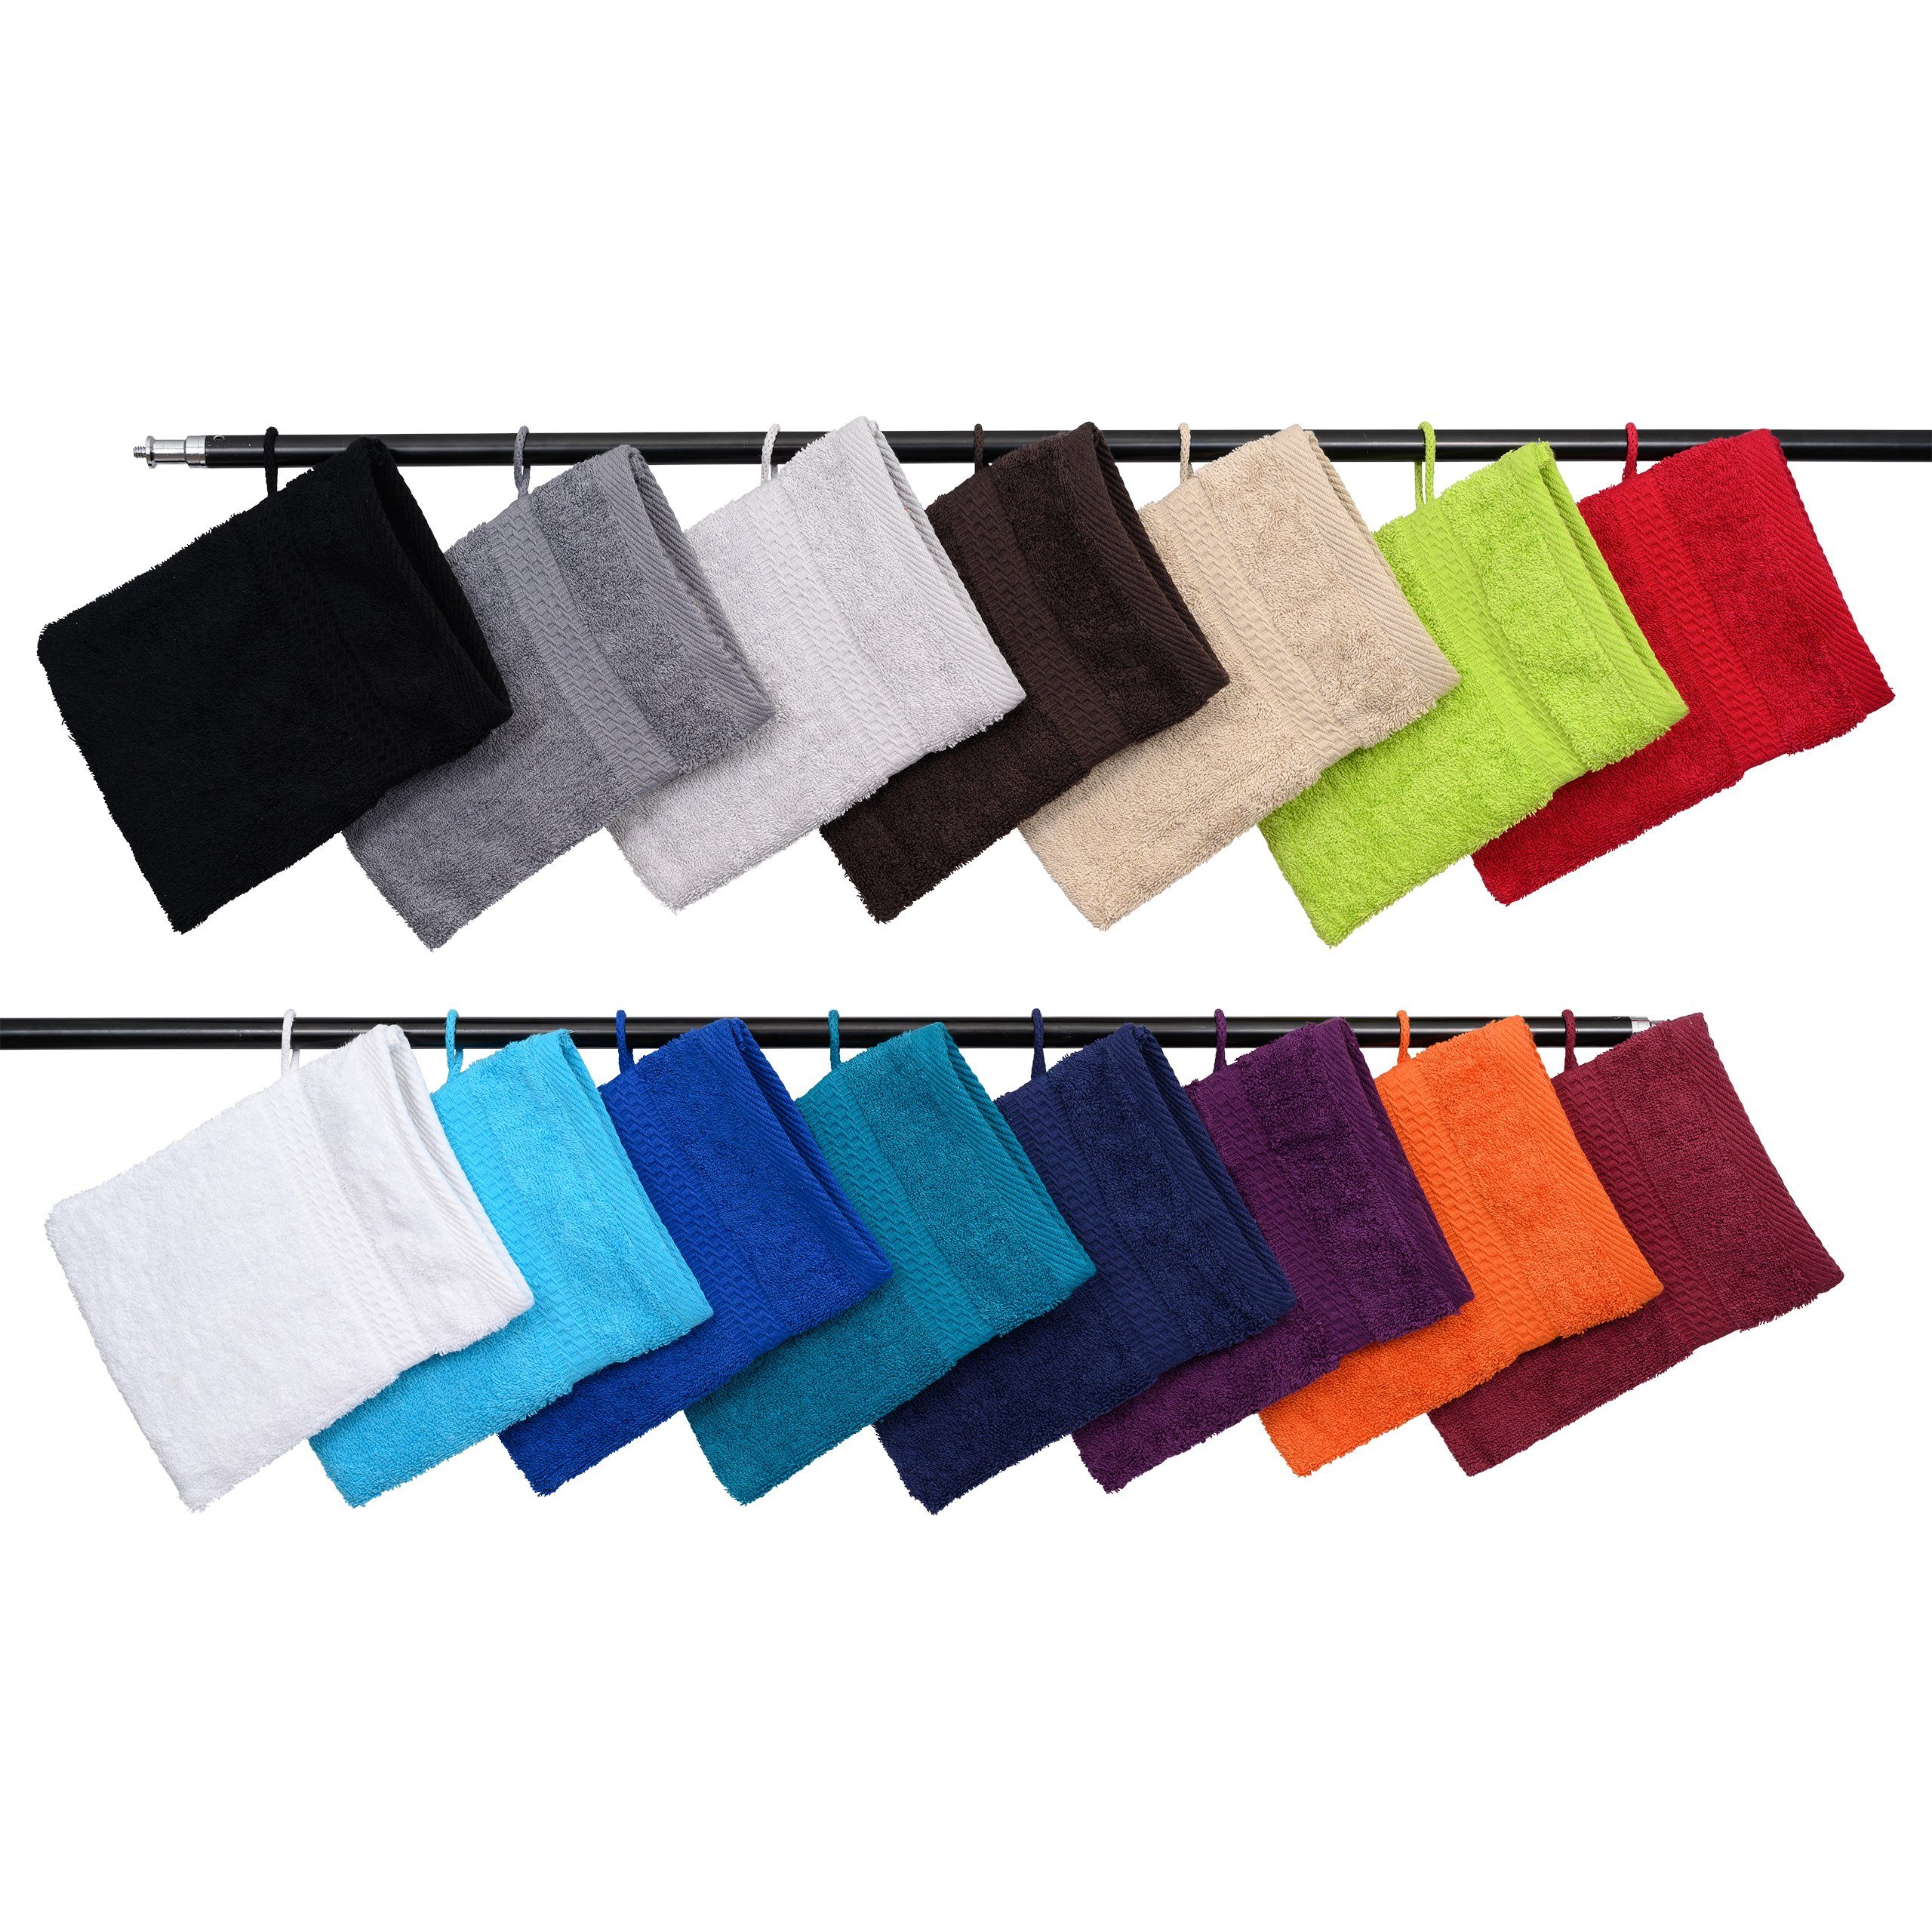 Hometex Premium Textiles Waschhandschuh Waschhandschuh in vielen verschiedenen Farben & im praktischen 10er Set Aubergine